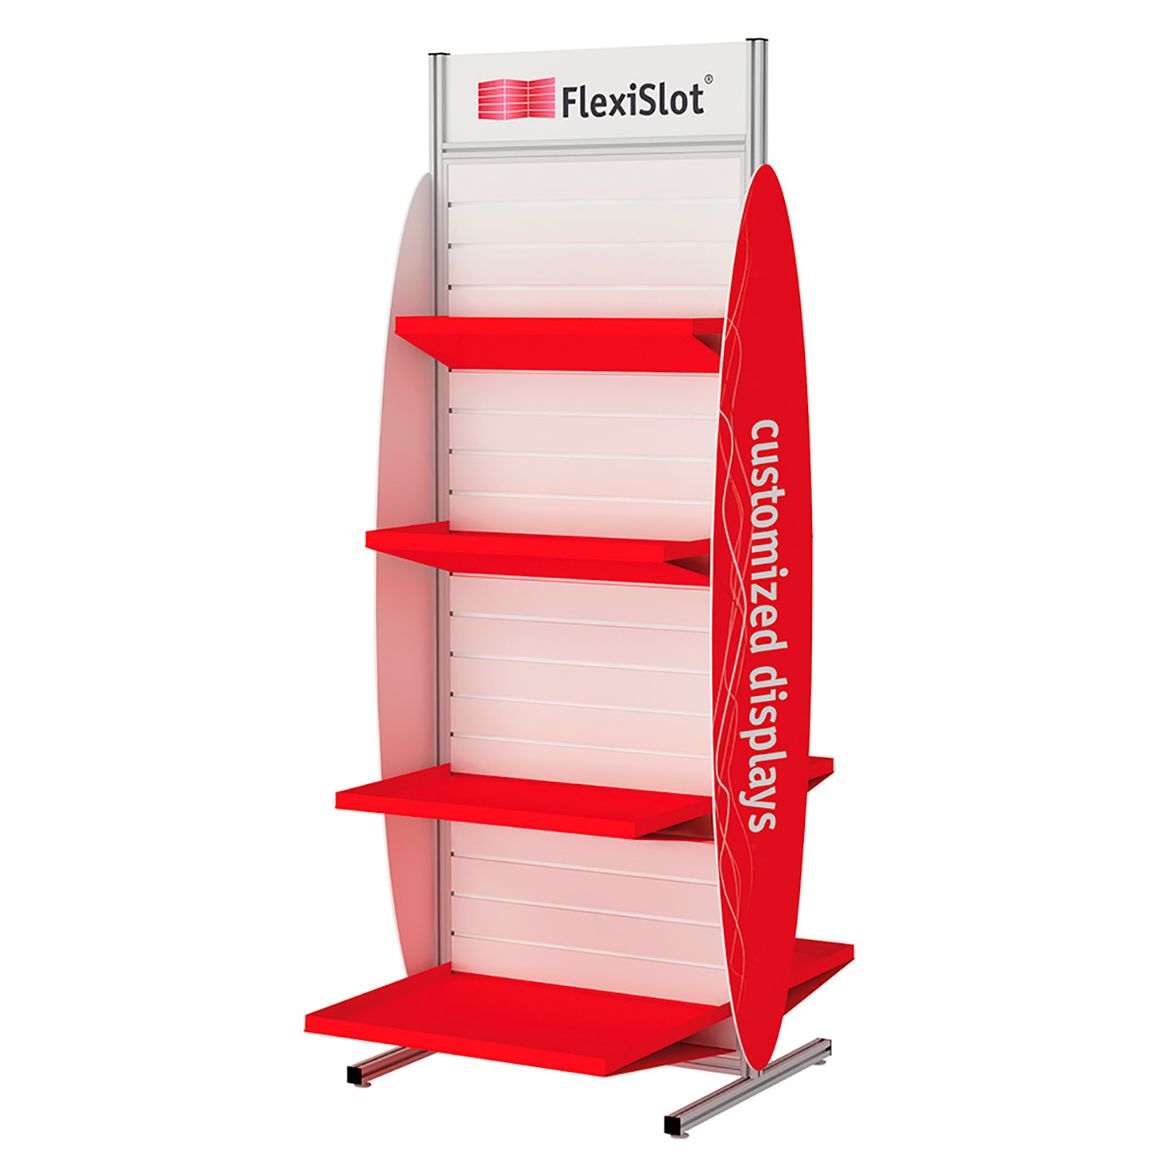 specialfremstillede-displays-flexiSlot